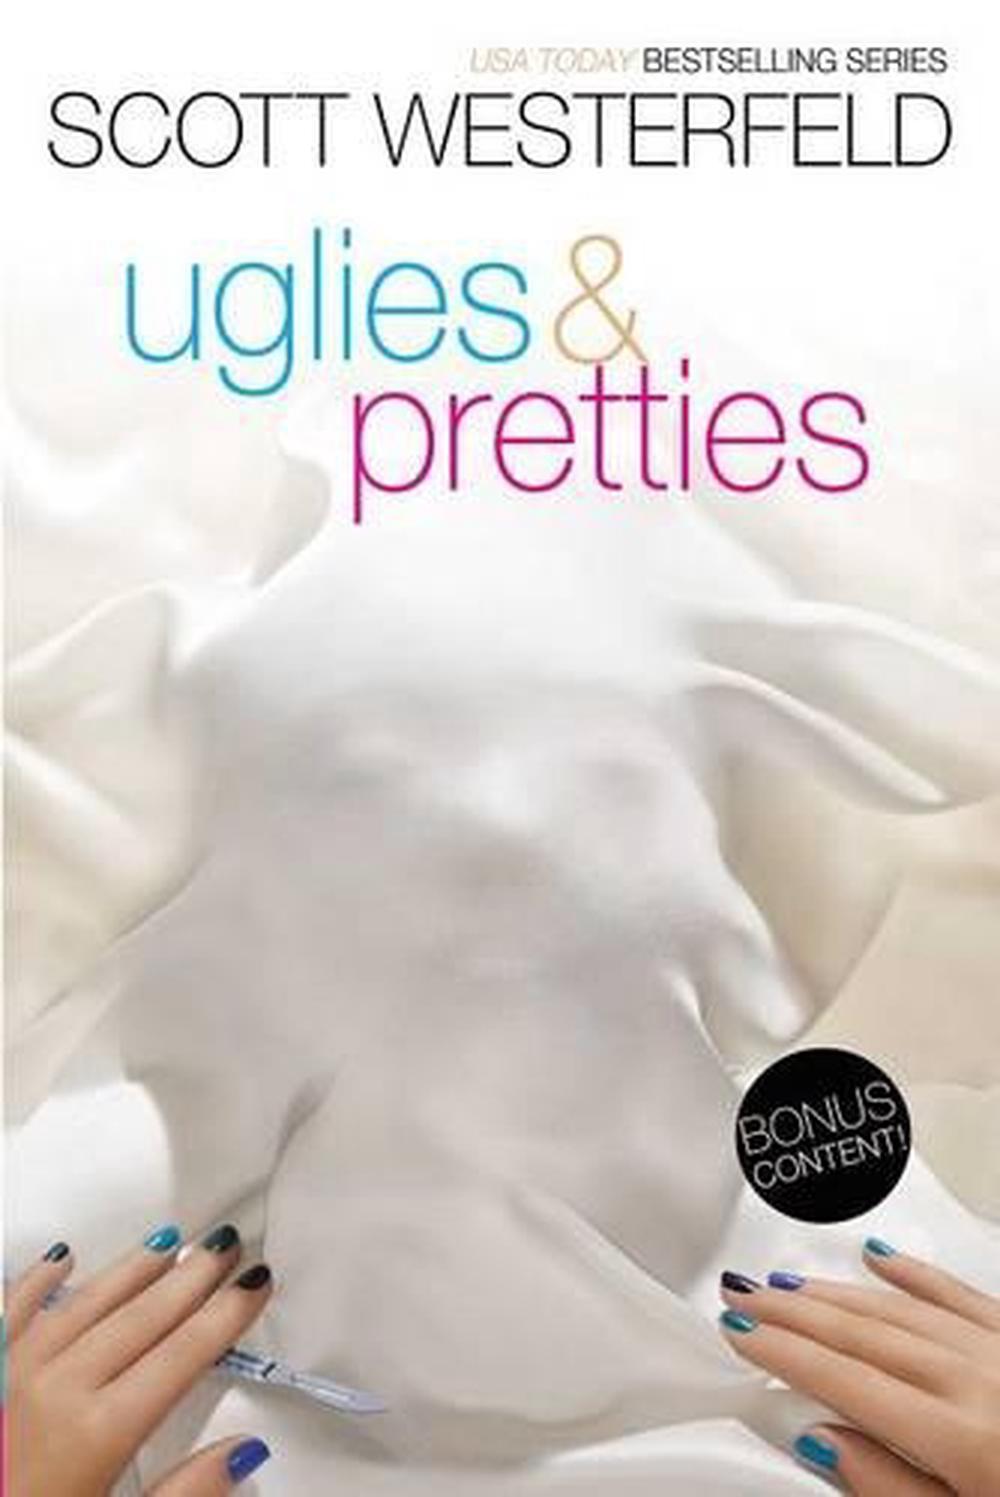 pretties uglies series